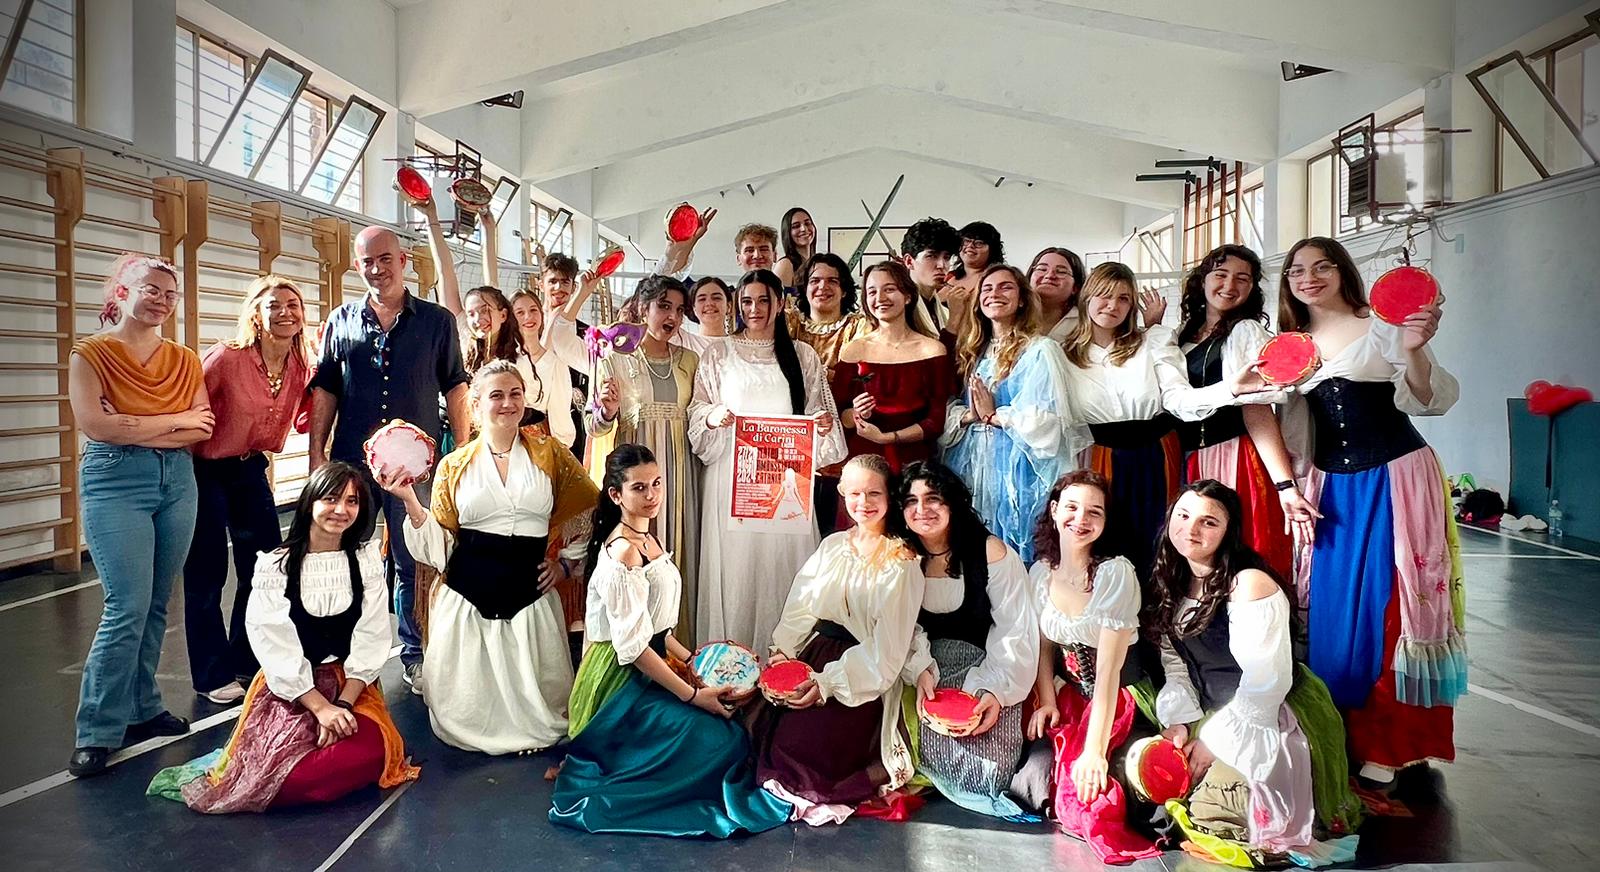 Il laboratorio teatrale “Parole&Musica” con gli studenti del Liceo Classico Statale “N. Spedalieri”: pronto al debutto con “La Baronessa di Carini, il musical”